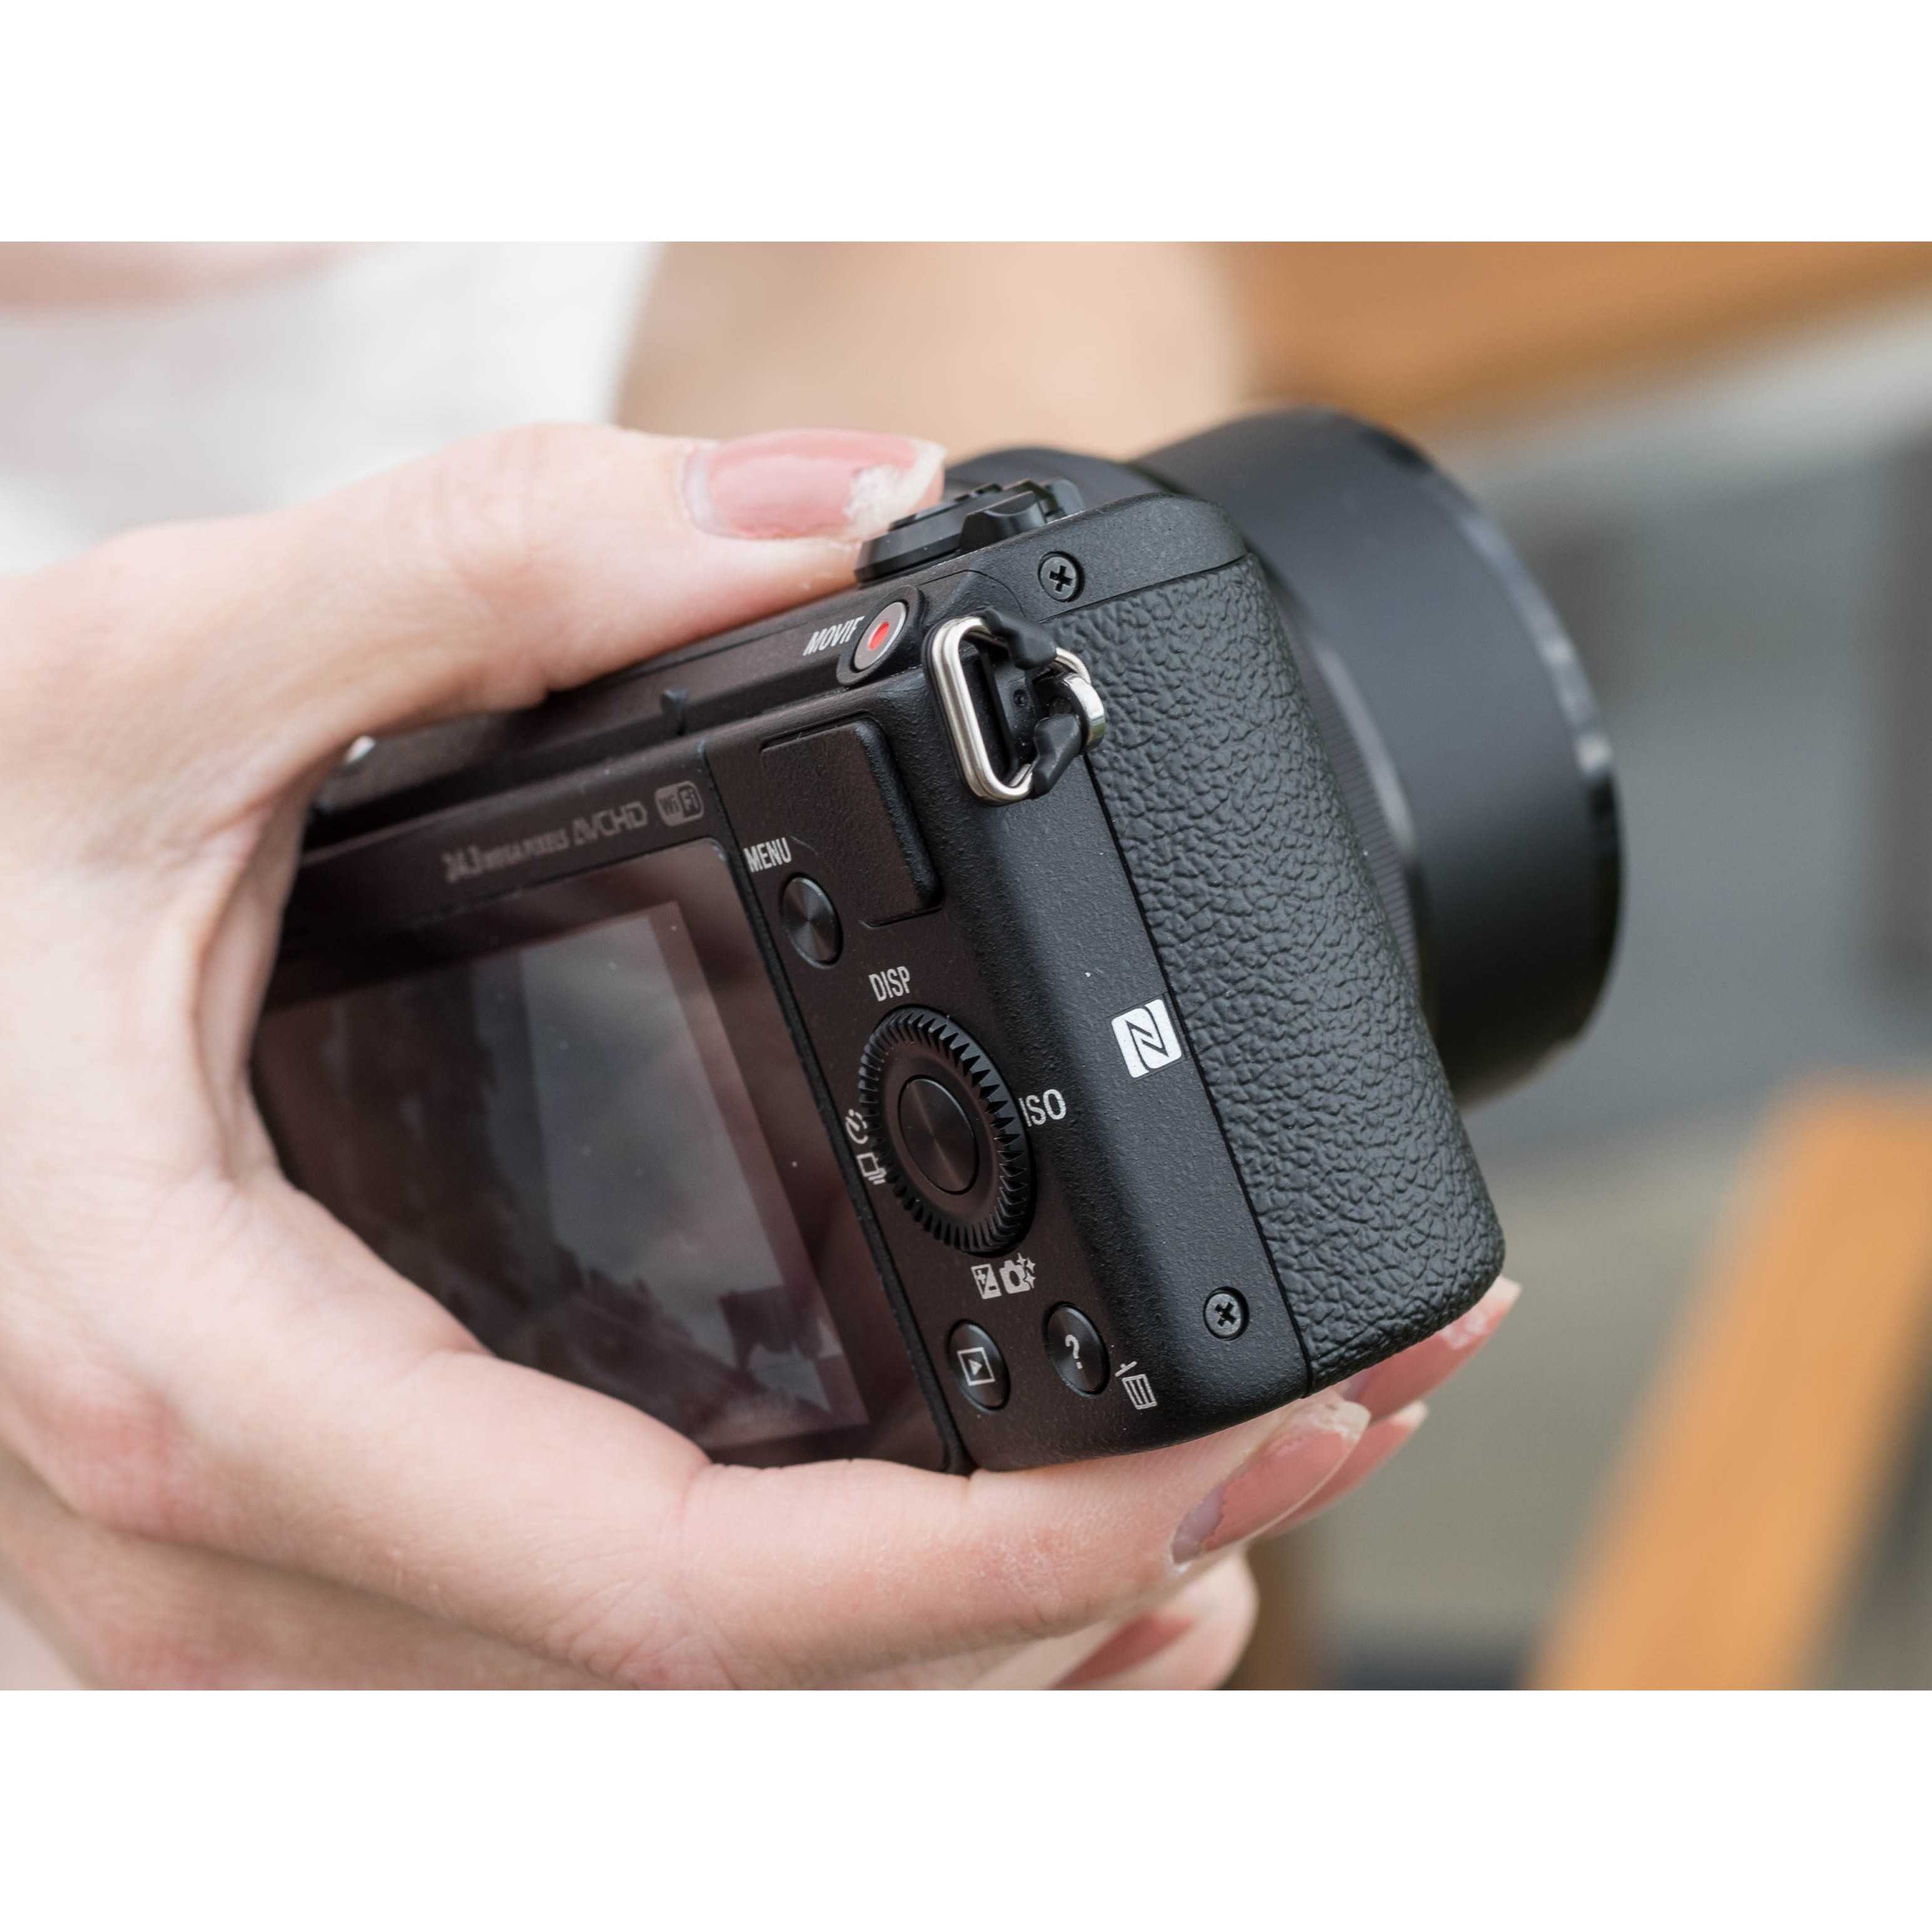 Беззеркальный фотоаппарат sony alpha a5100 kit (ilce-5100l) black